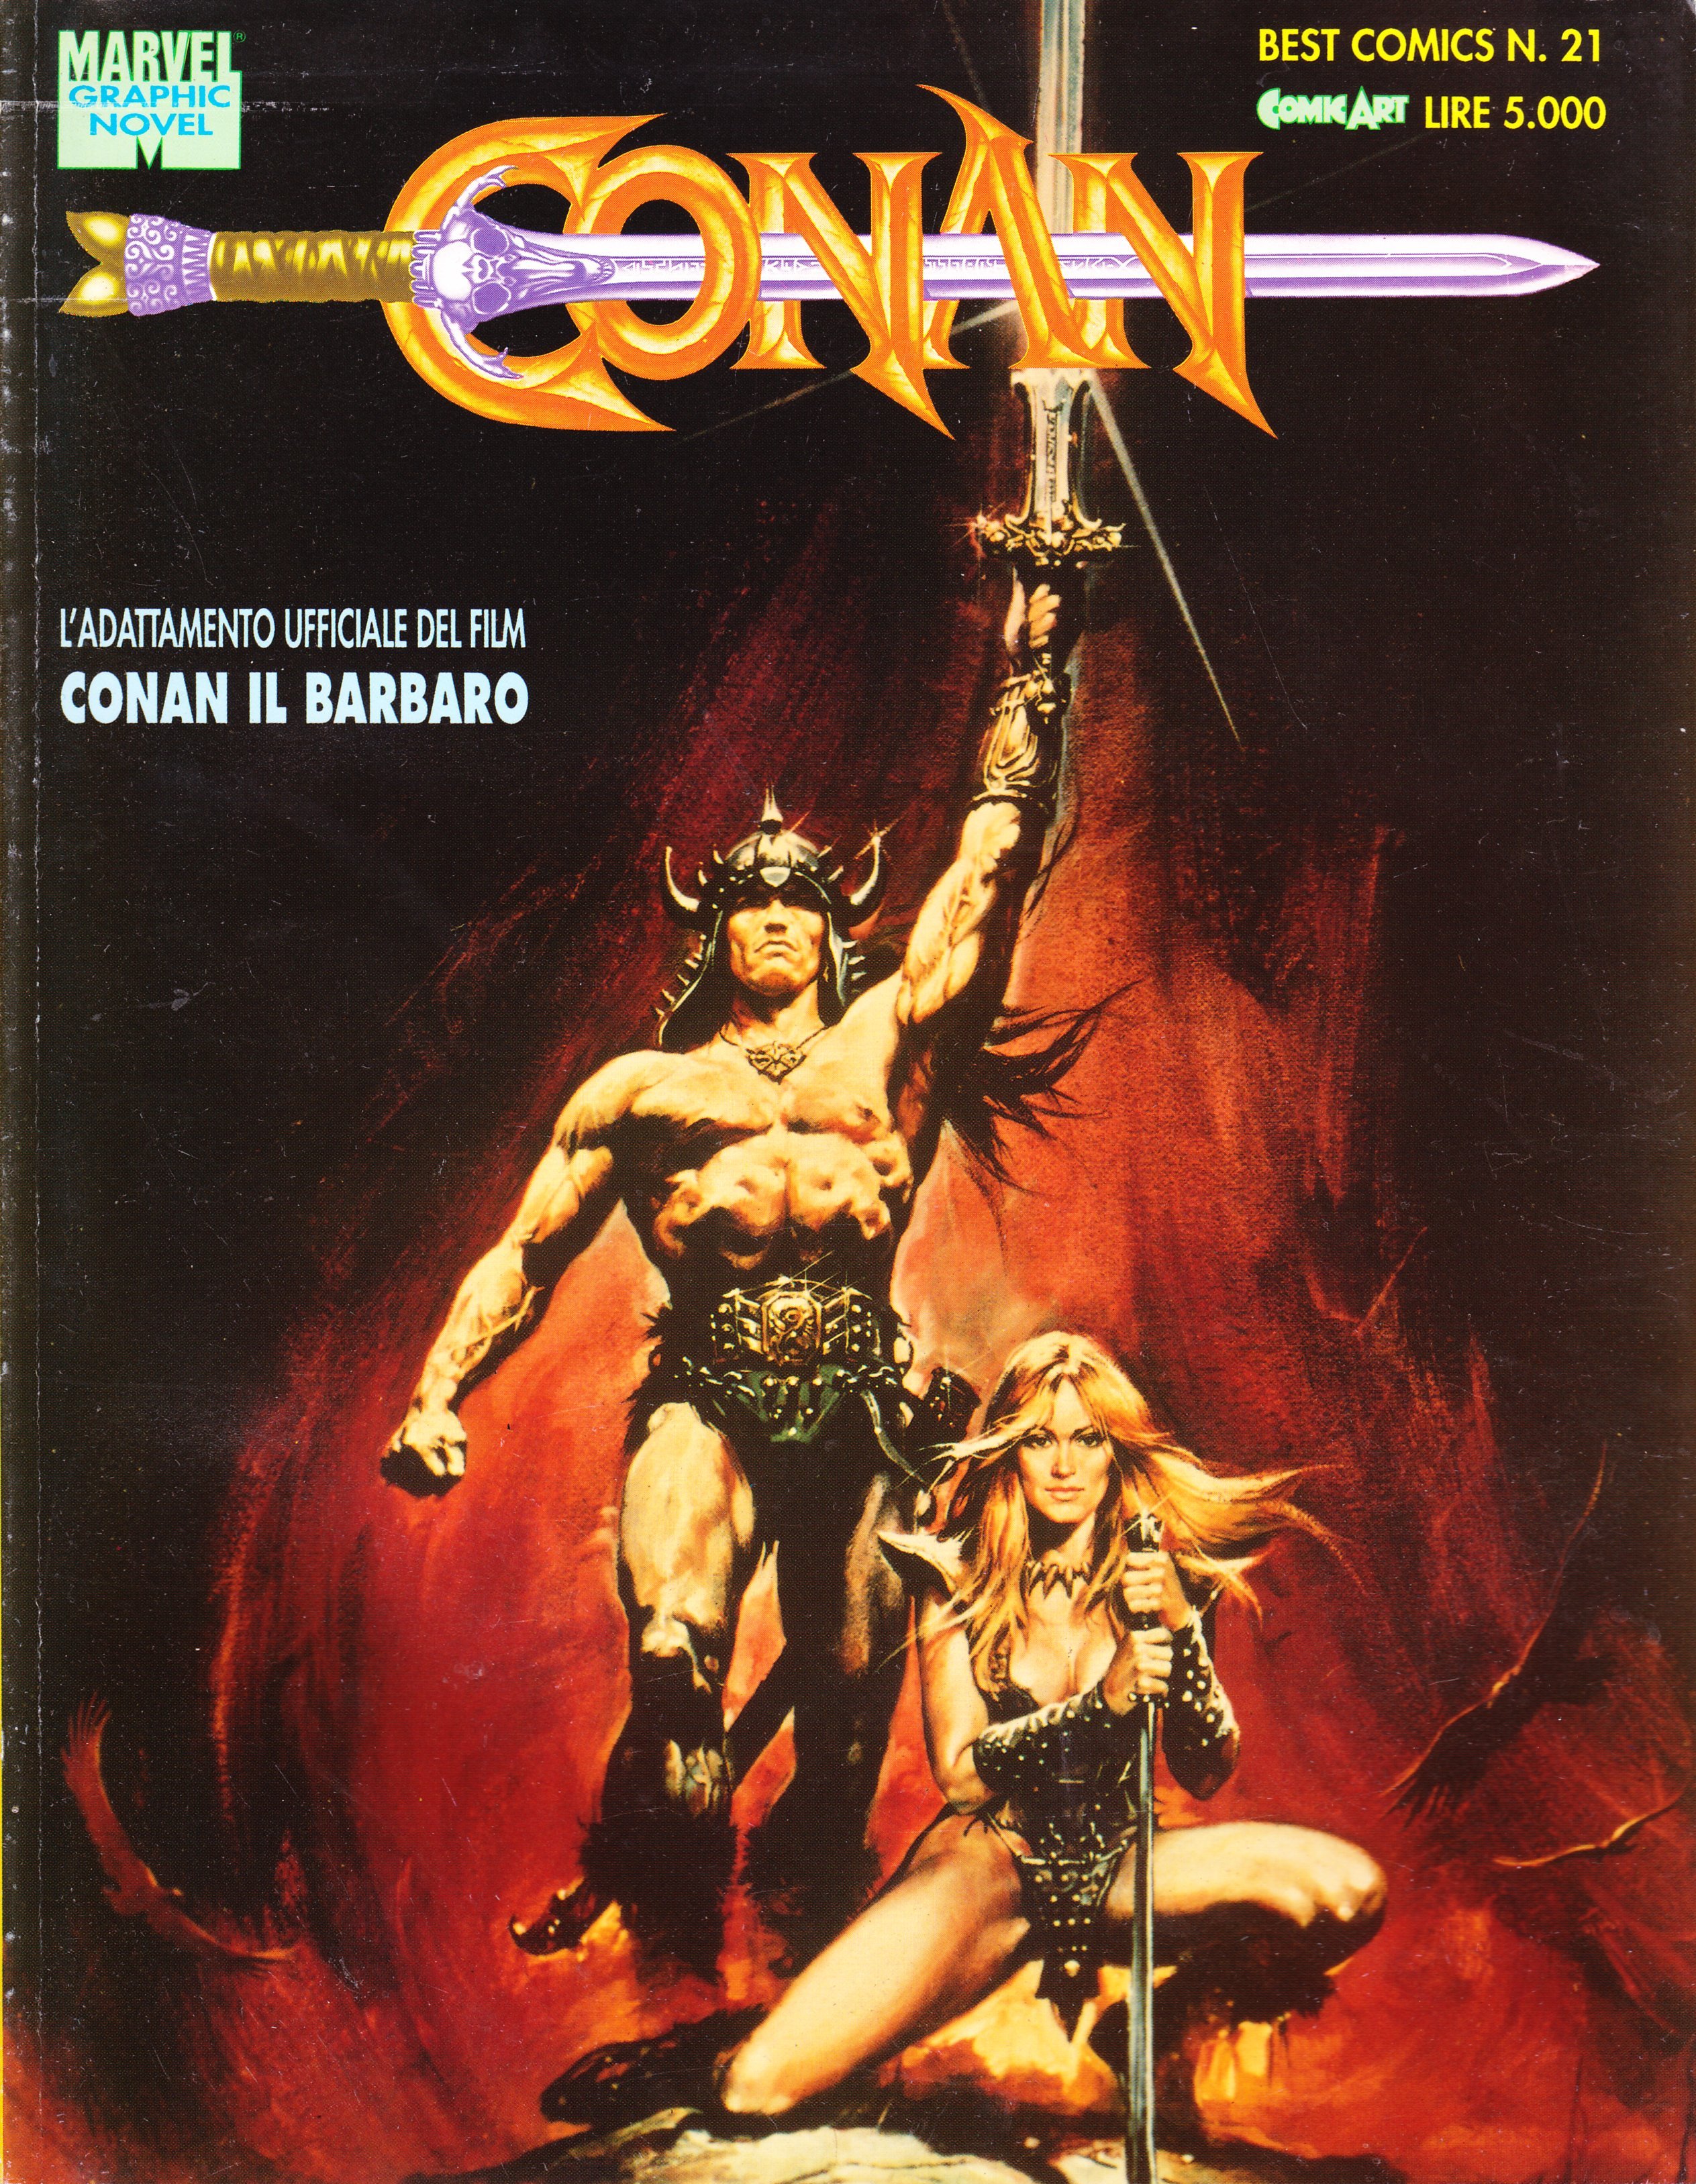 Adattamento ufficiale del Film Conan il barbaro